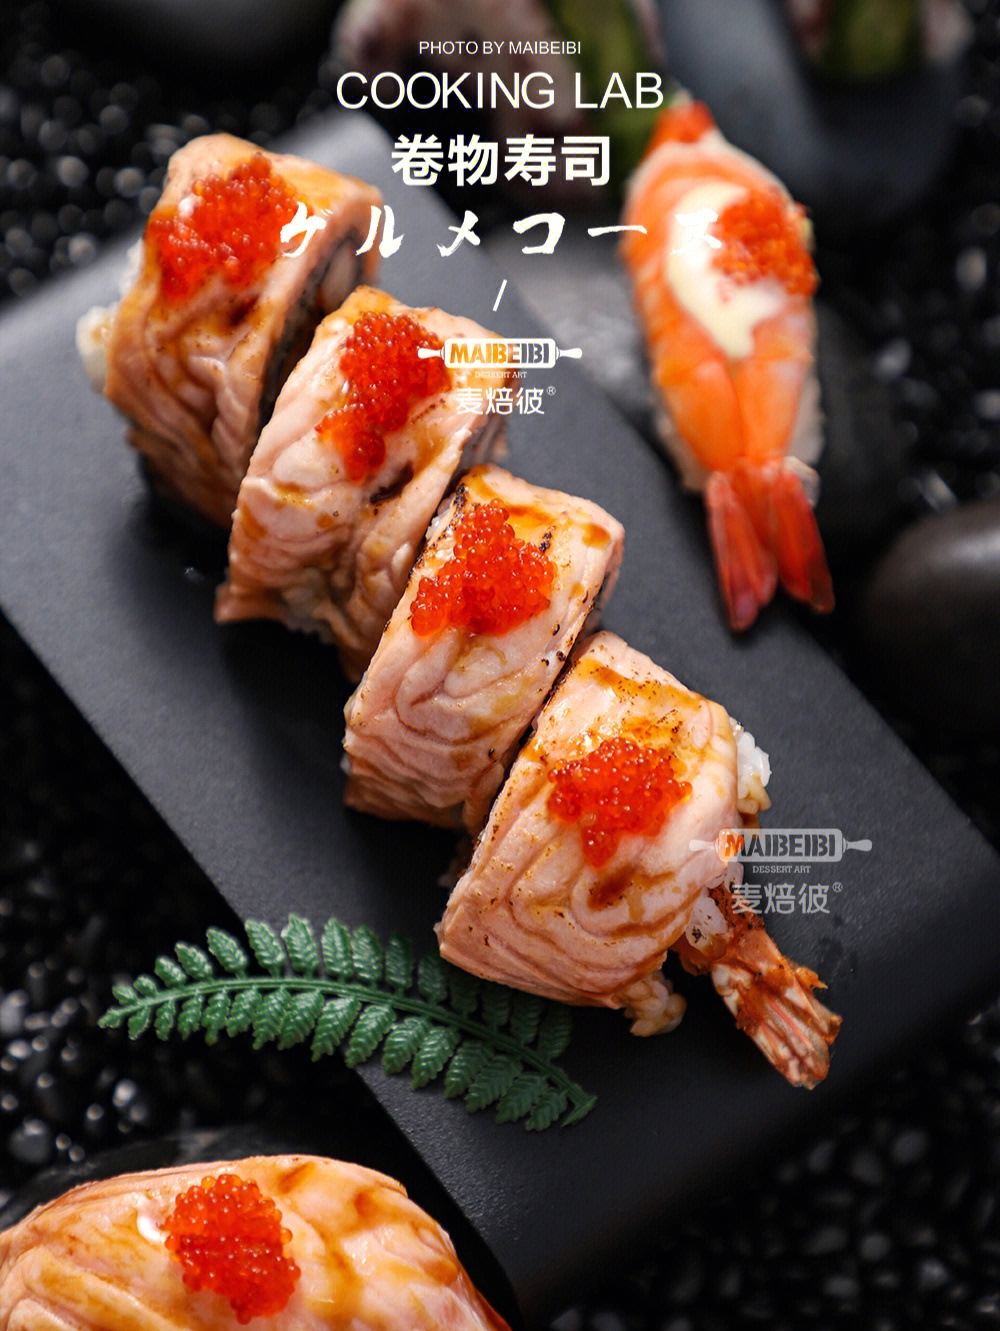 寿司,绝对是治愈系美食,几片新鲜鱼肉9502蔬菜包裹着亮晶晶的醋味